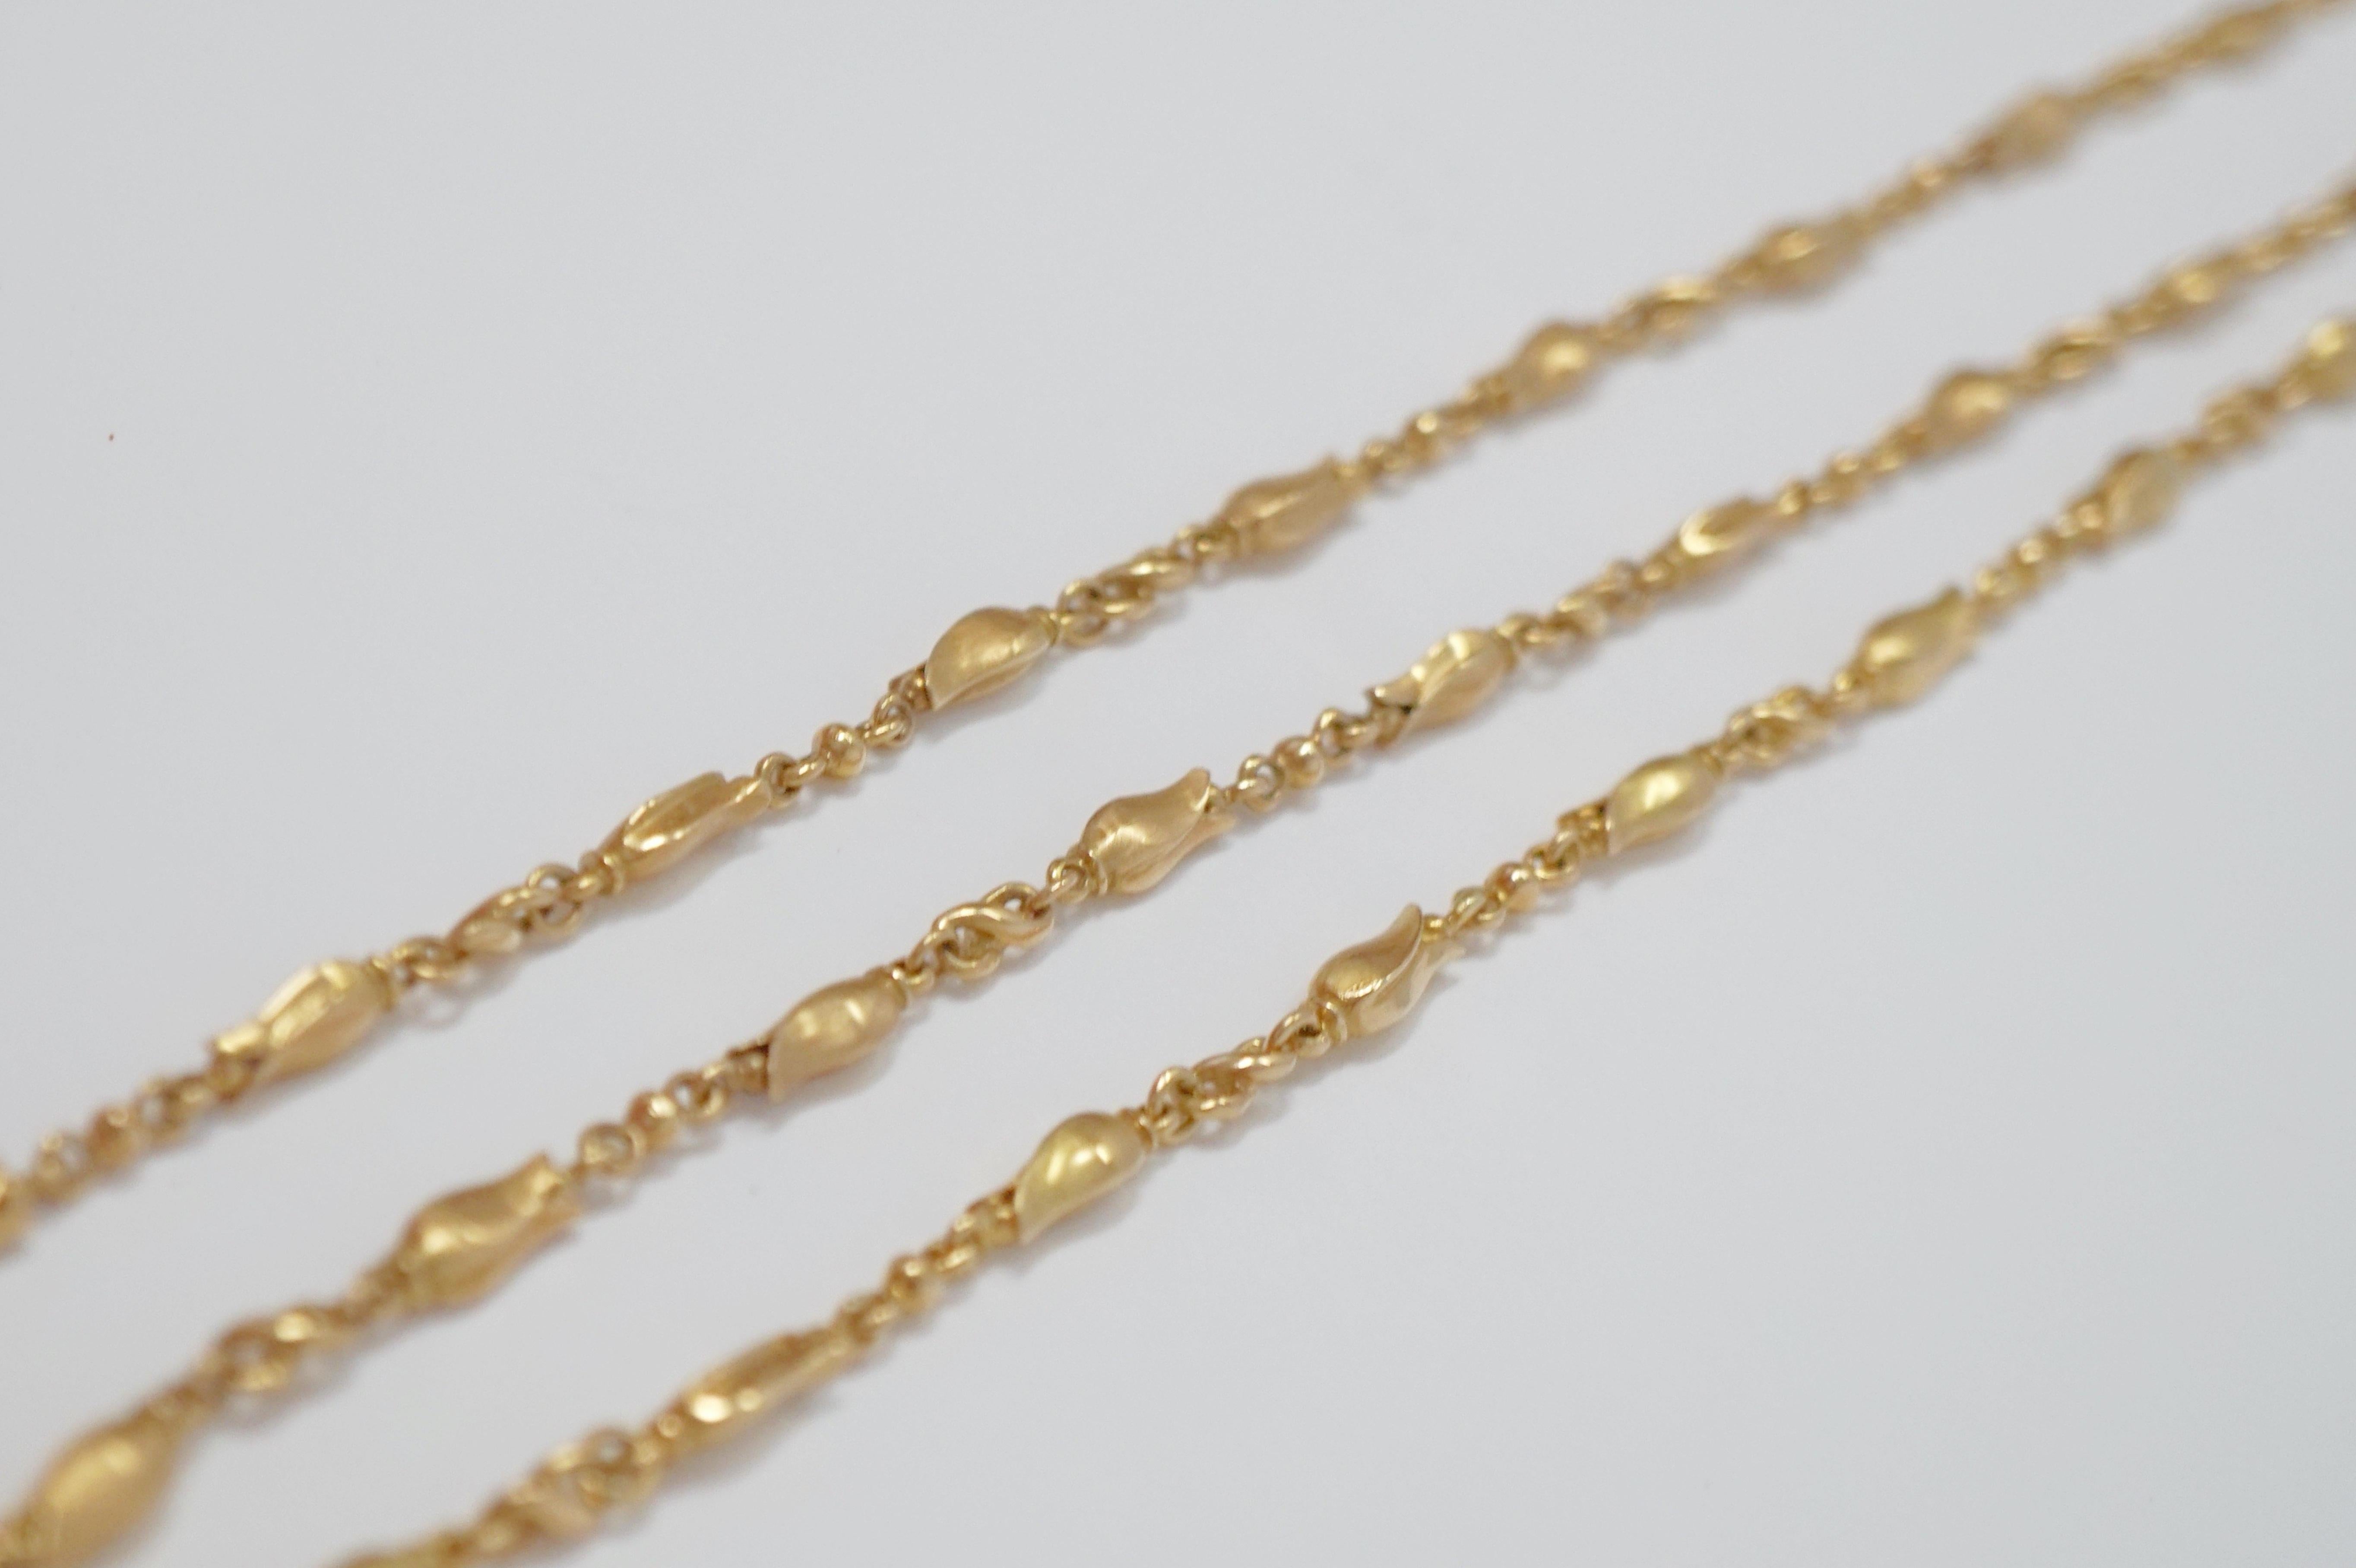 Georg Jensen 18 Karat Gold Necklace and Bracelet Set, Signed 14